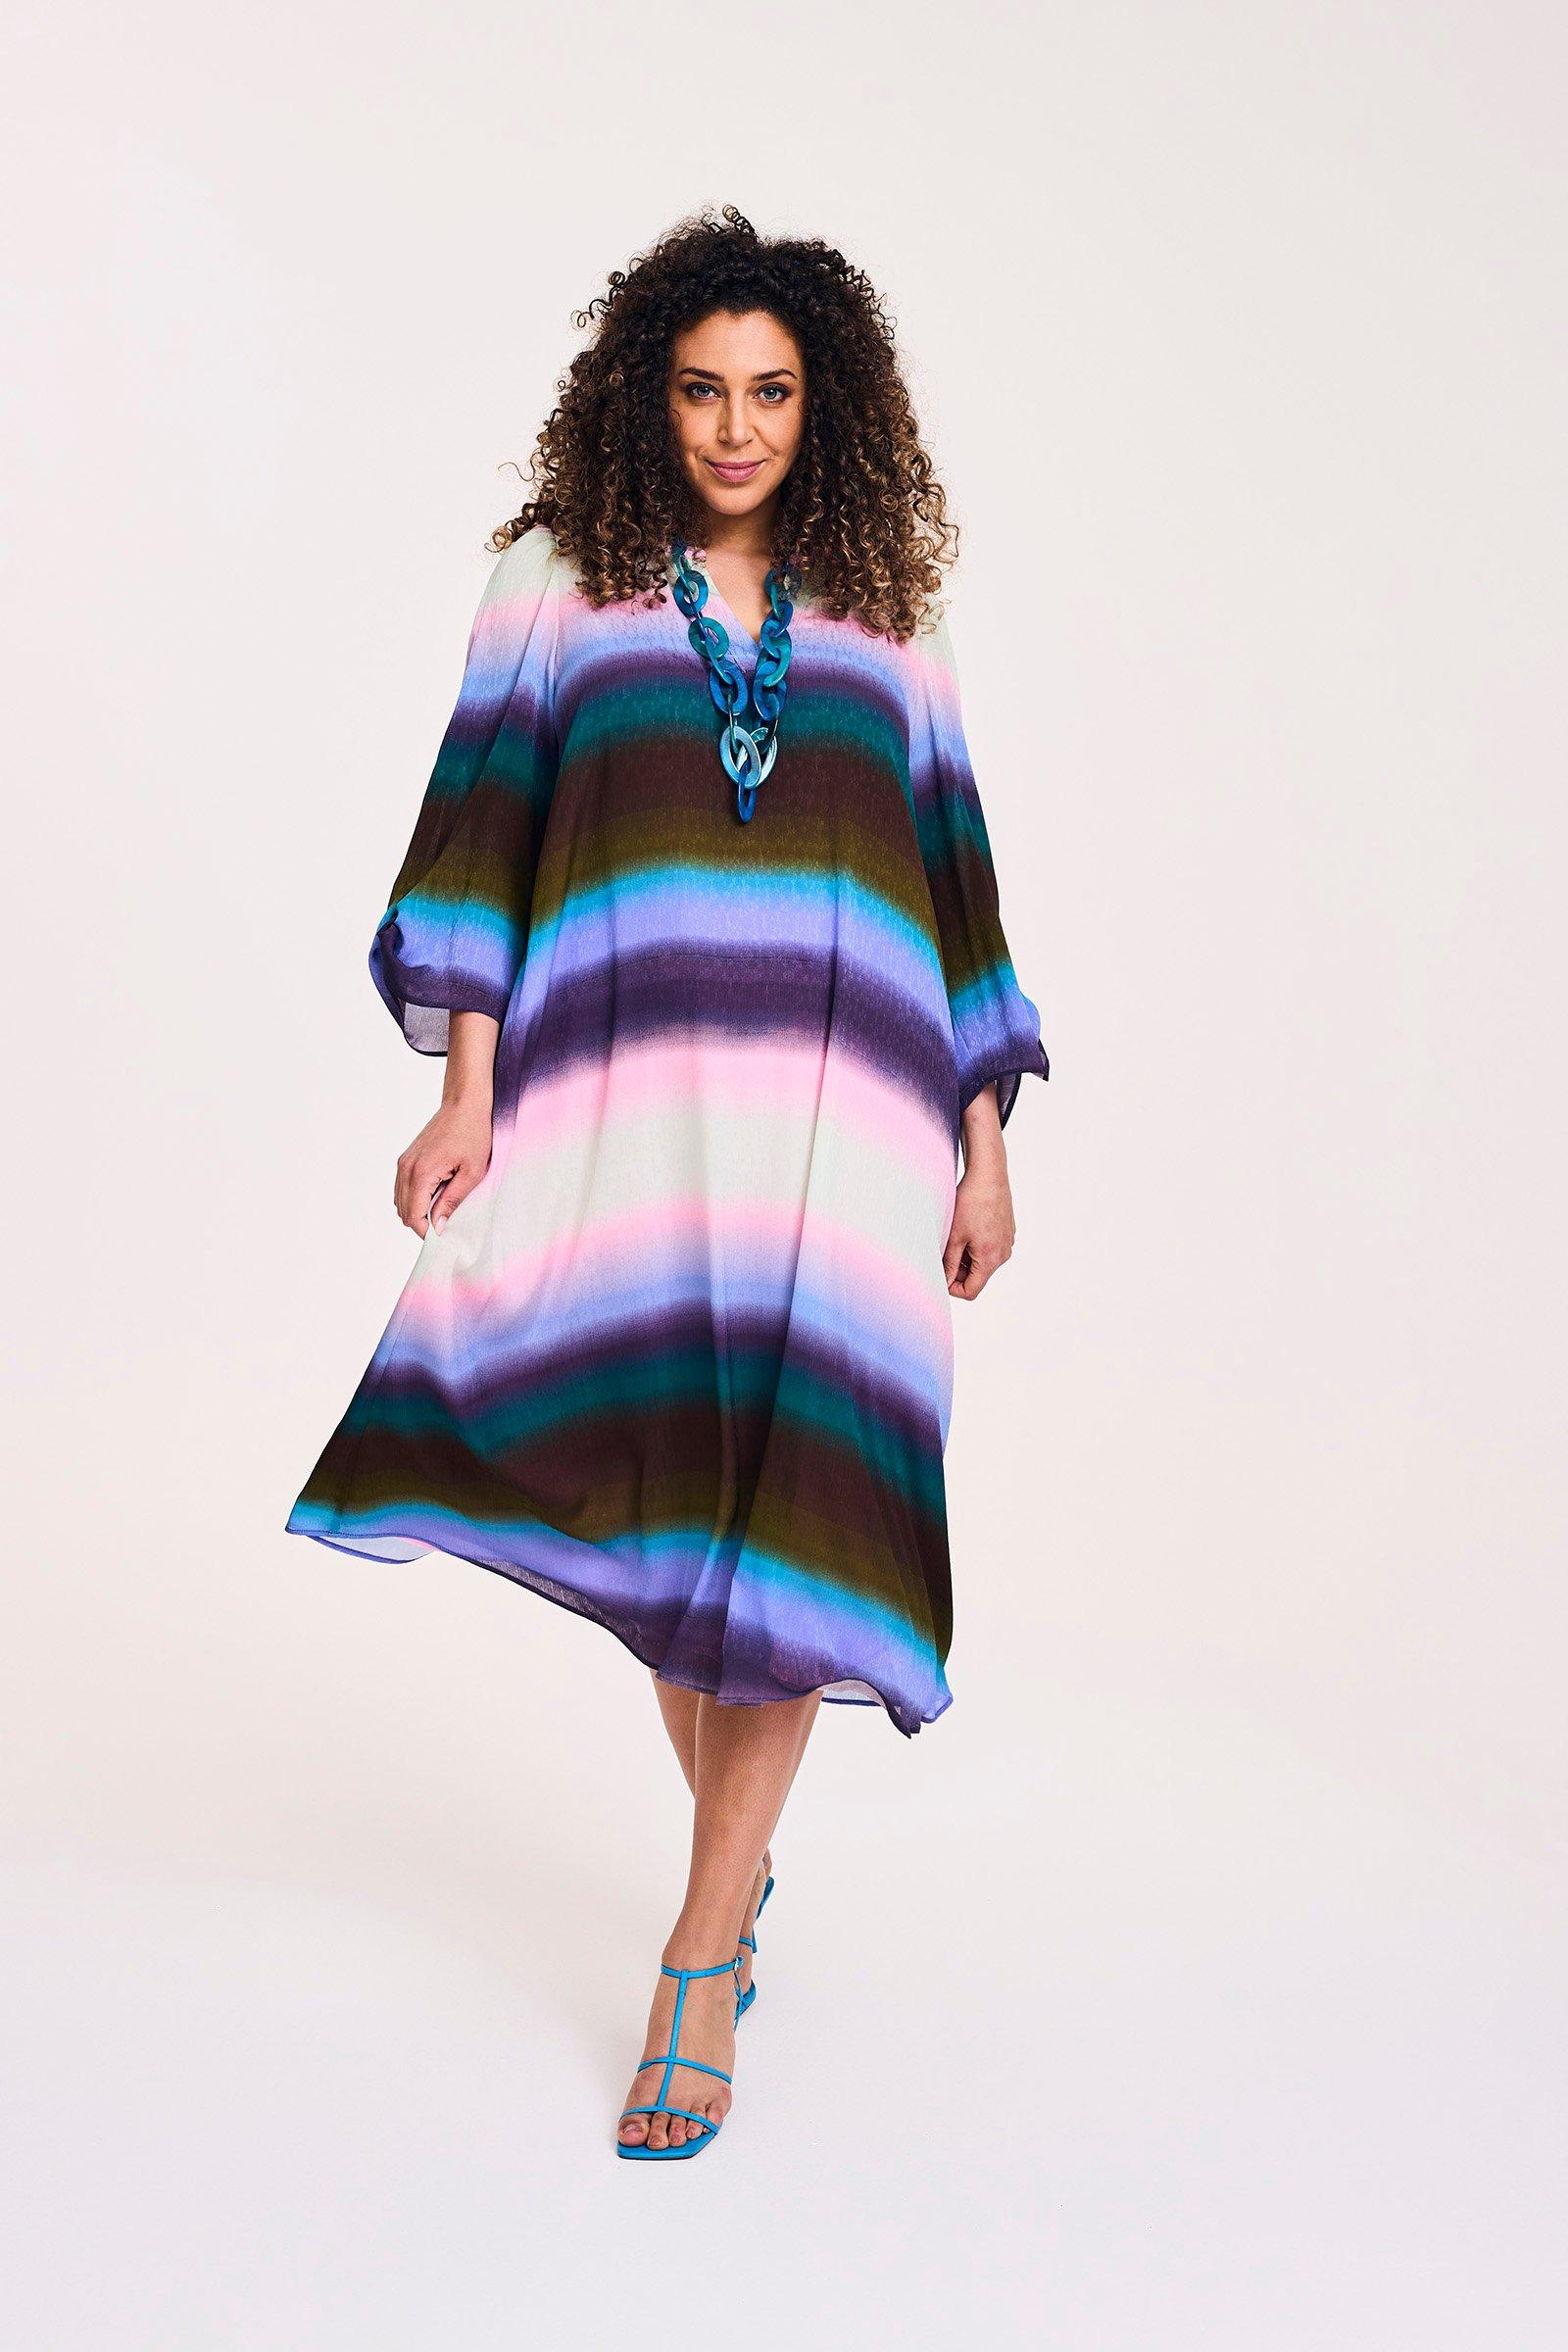 Rechte jurk met regenboogprint